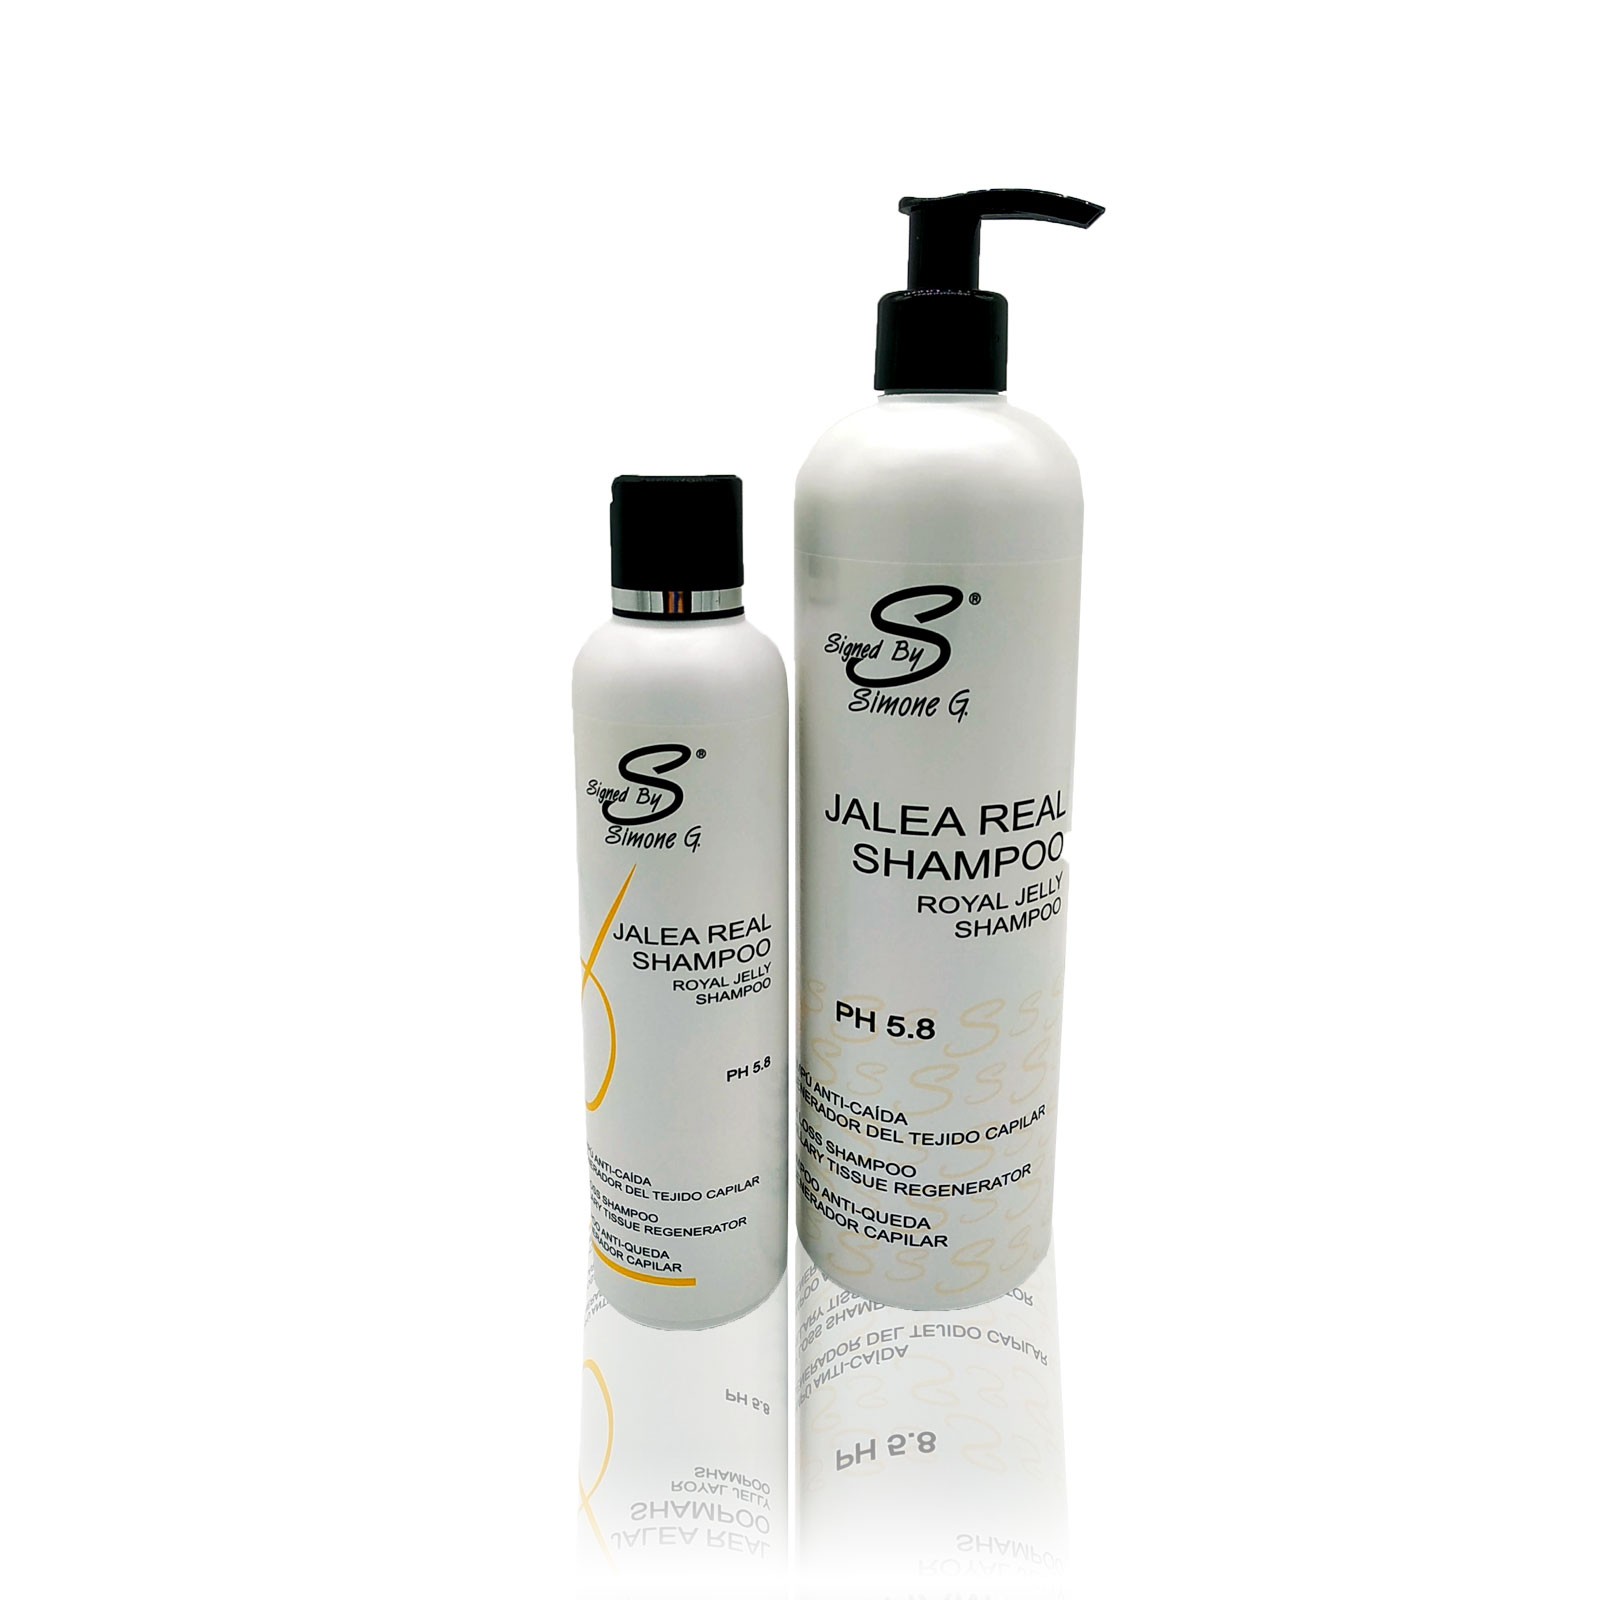 Royal Jelly Shampoo Signed by Simone G. Anti-hair loss regenerative Shampoo